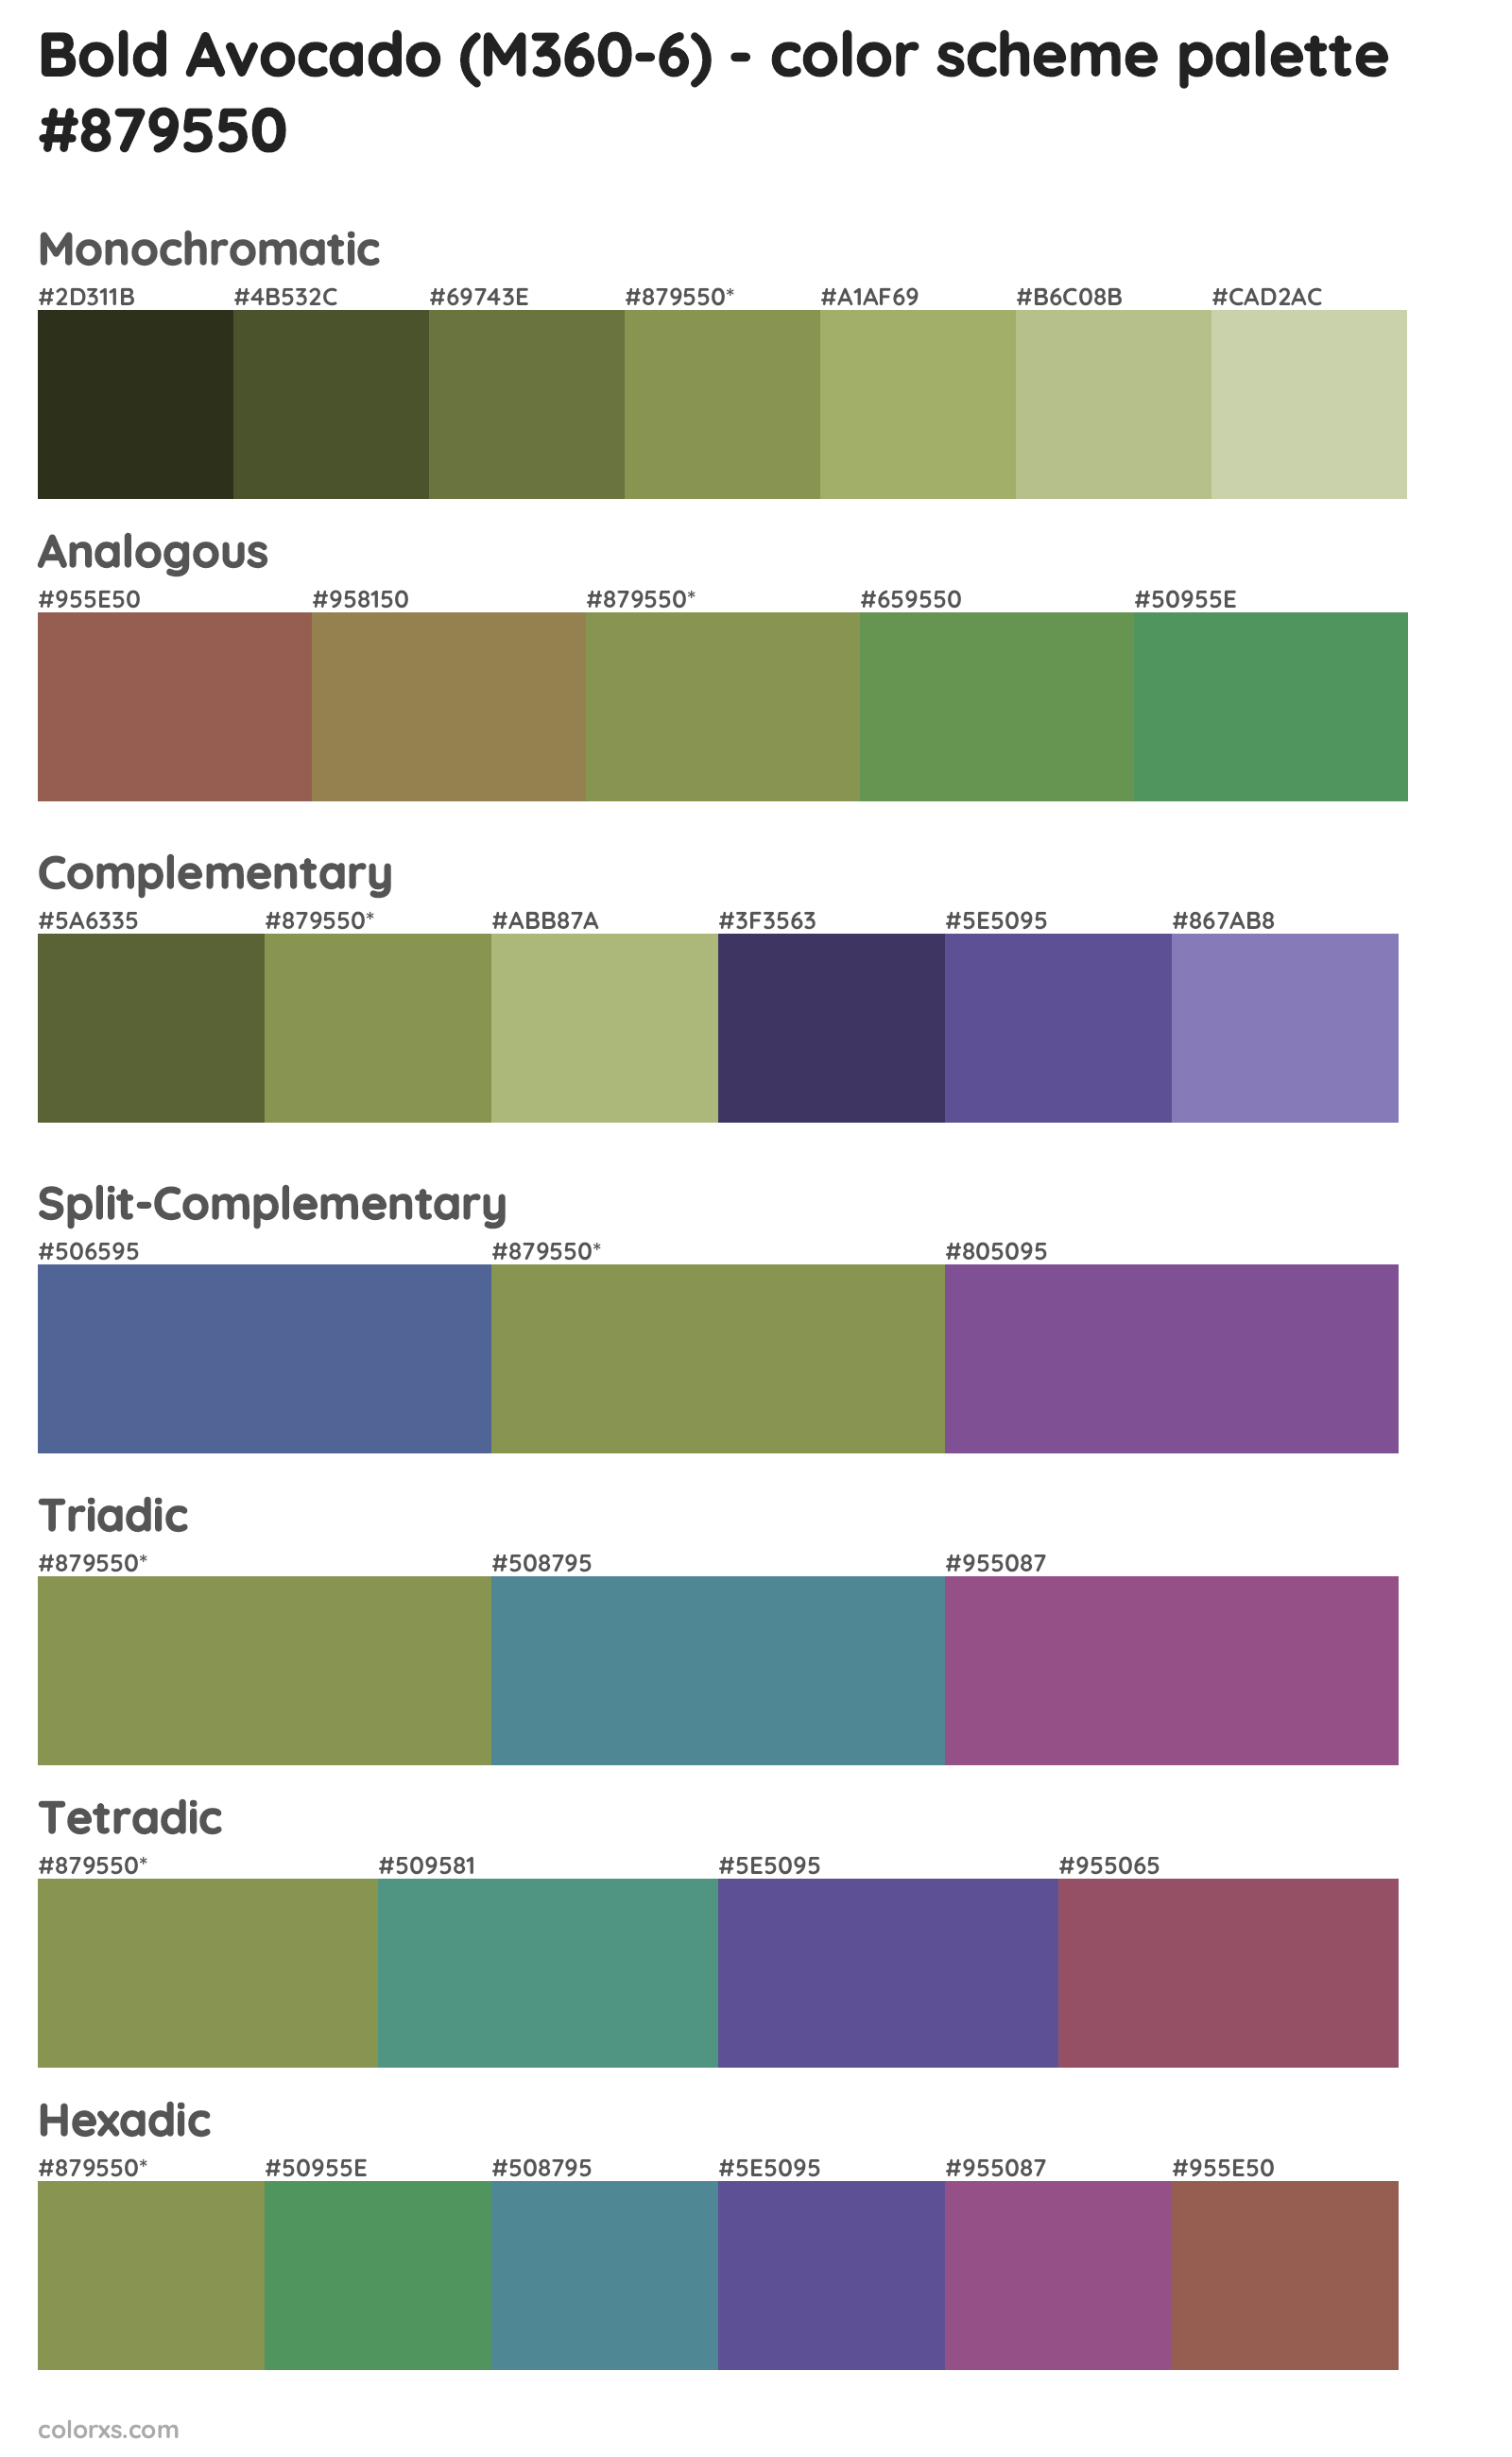 Bold Avocado (M360-6) Color Scheme Palettes